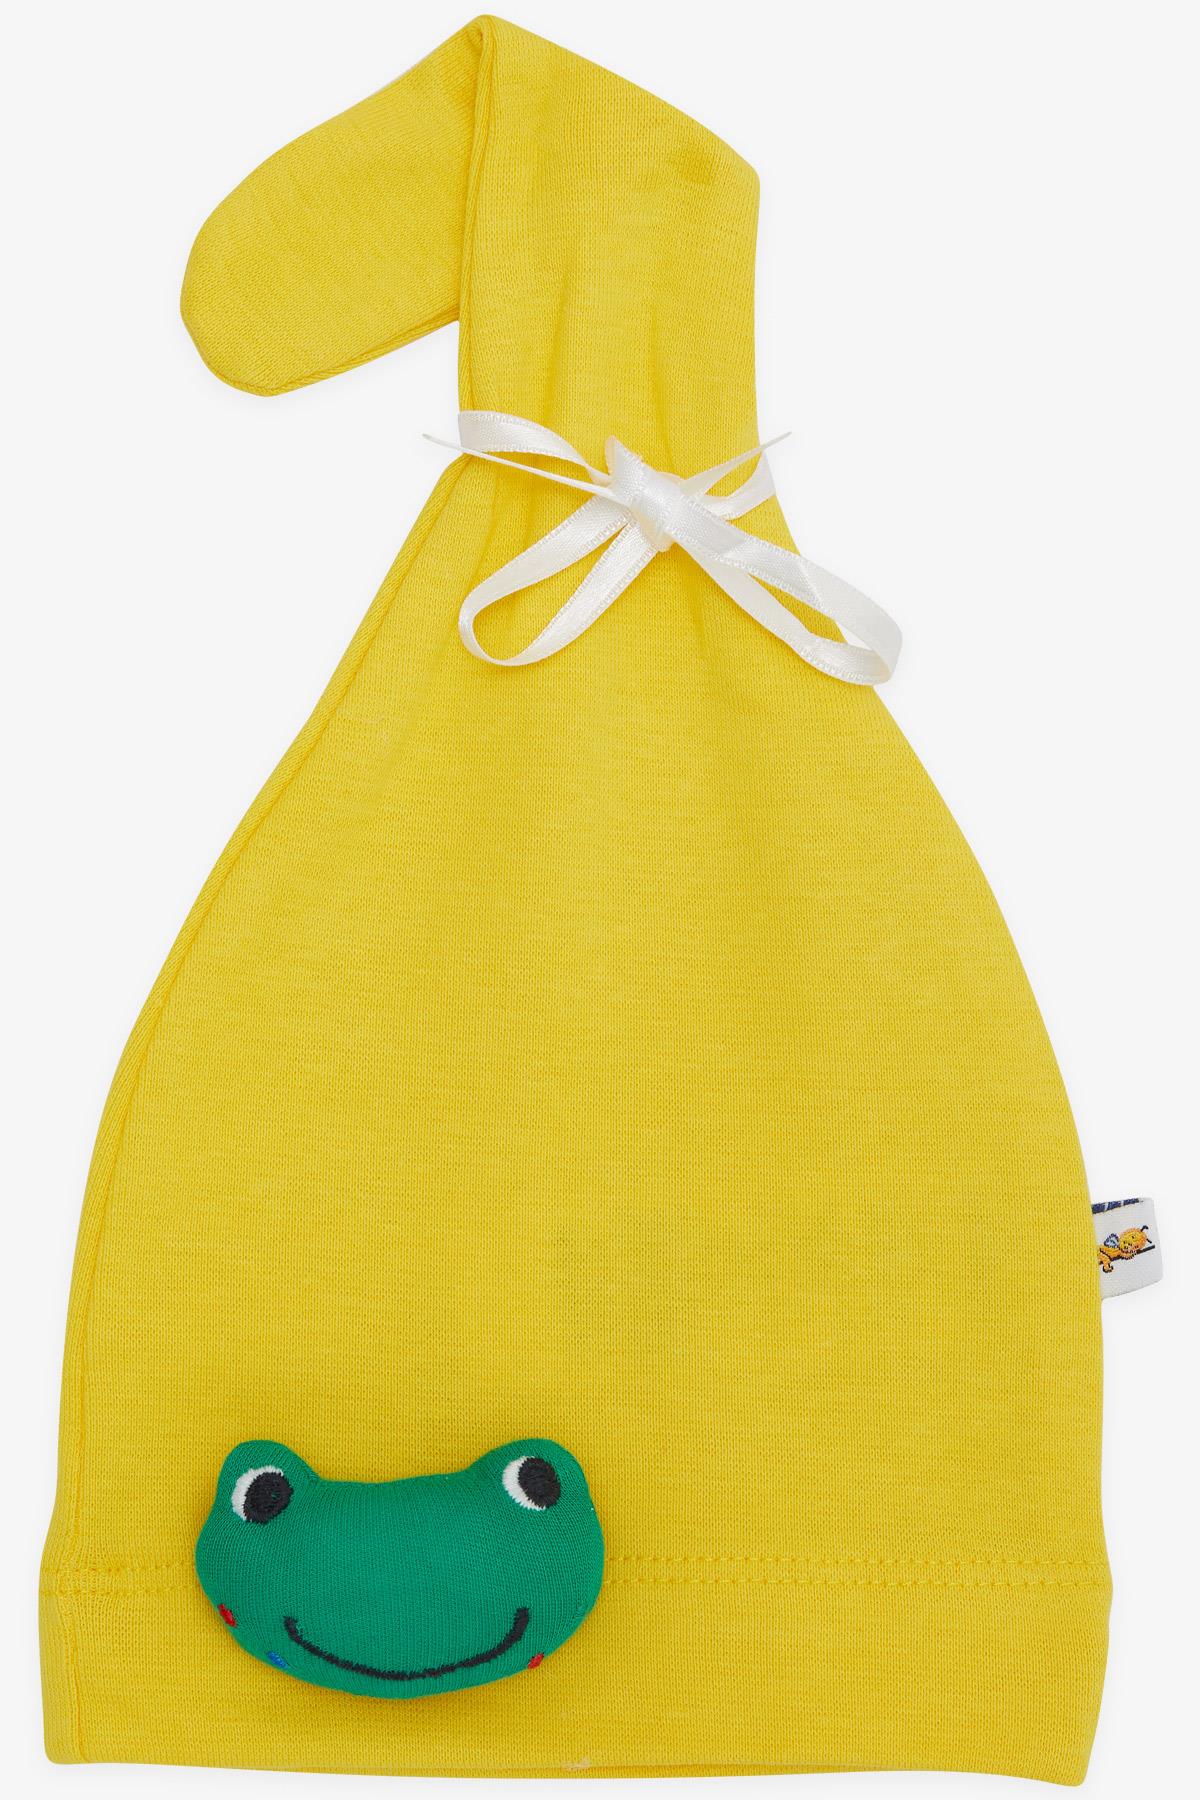 Yeni Doğan Bebek Şapkası Sevimli Kurbağacık Oyuncak Aksesuarlı Sarı  Standart - Minik Bebek Şapka Modelleri | Breeze